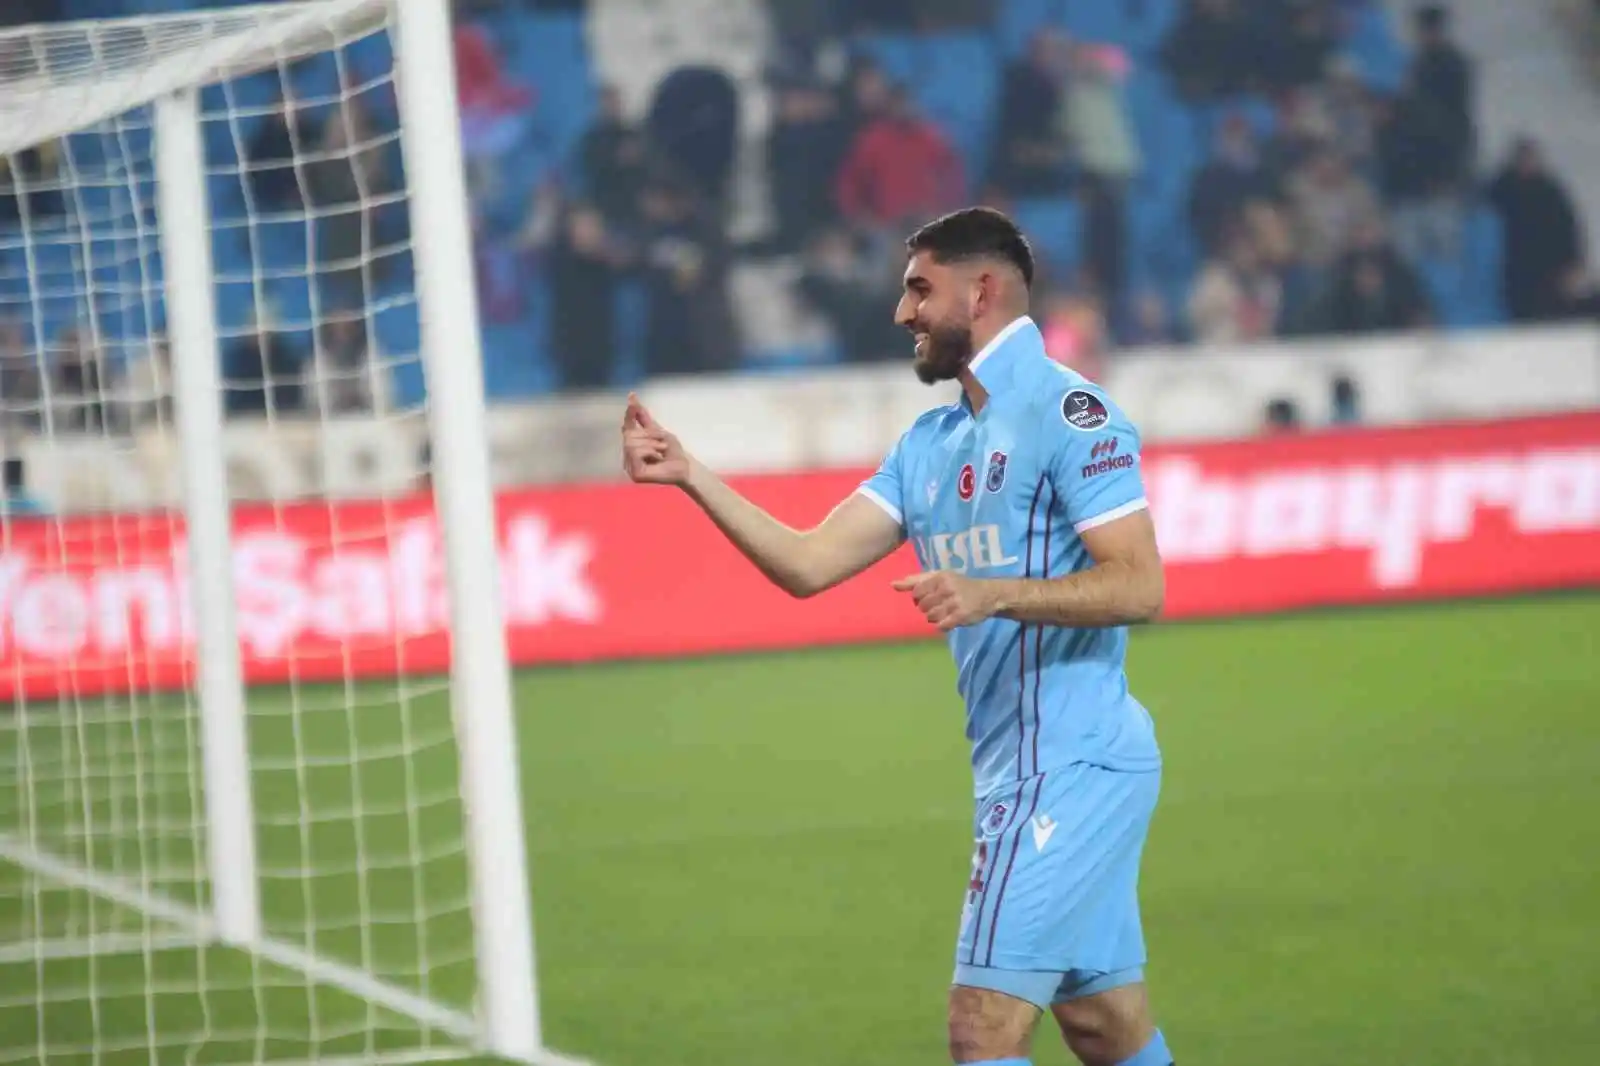 Spor Toto Süper Lig: Trabzonspor: 3 - Giresunspor: 0 (Maç sonucu)
